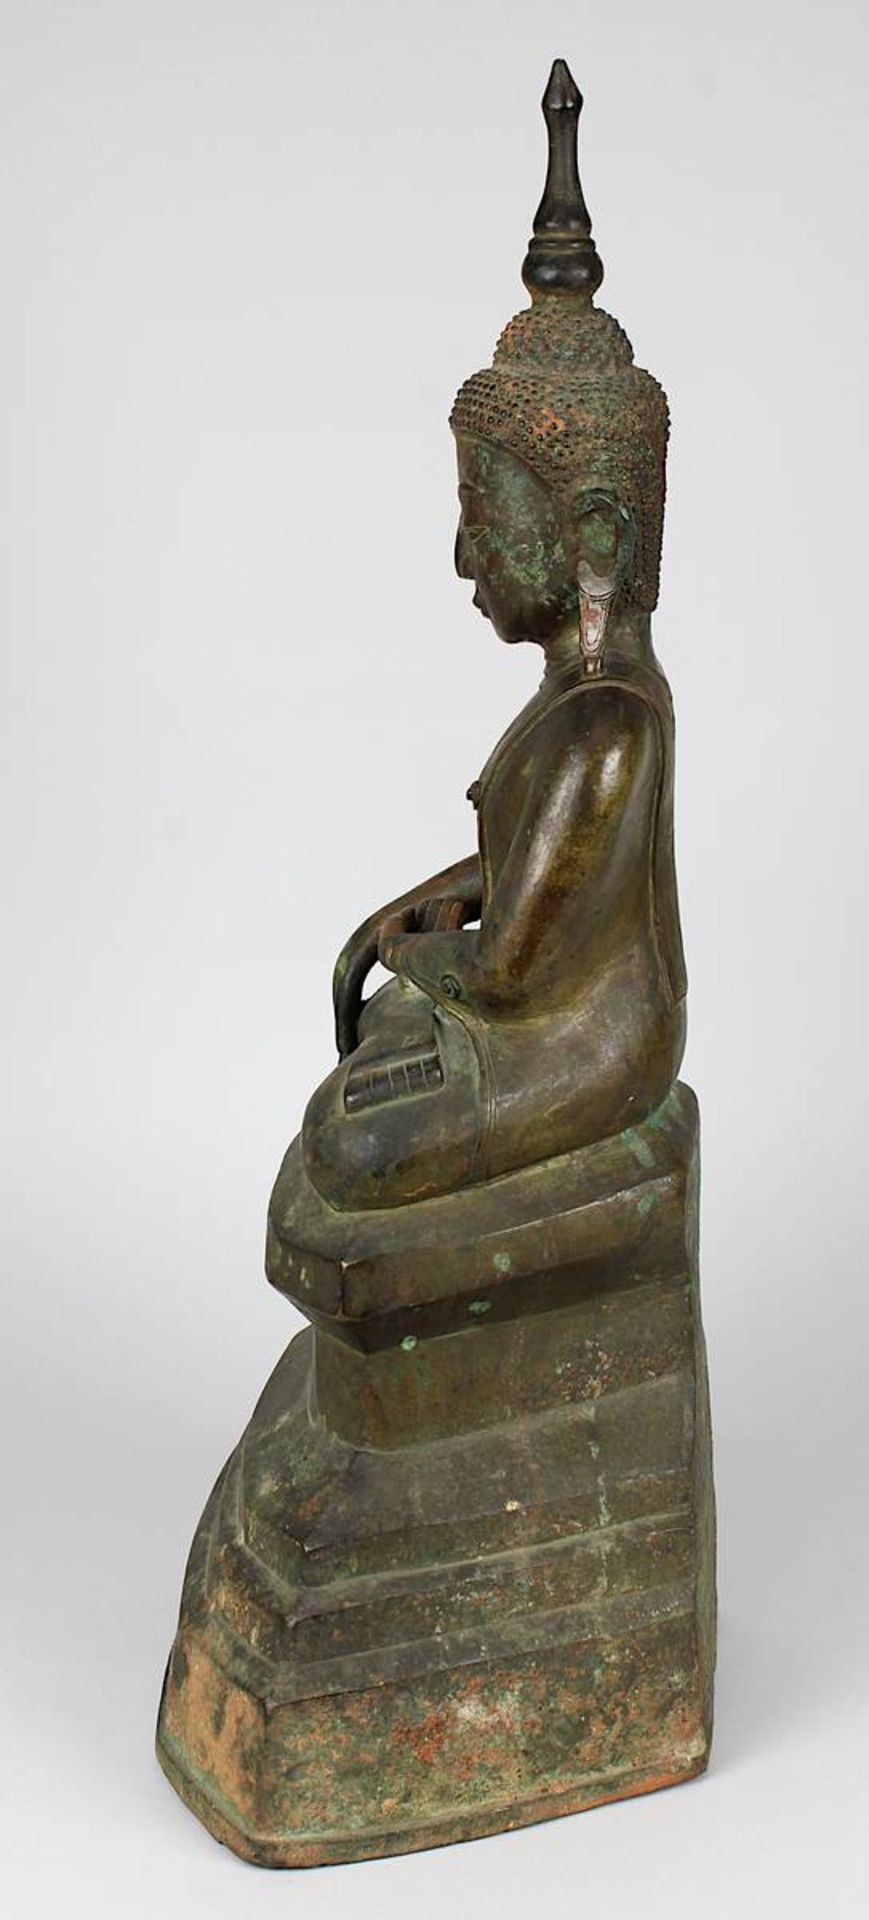 Große Figur des sitzenden Buddha, Thailand, Ayutthaya, 17. Jh., Bronze mit sehr schöner Alterspatina - Bild 2 aus 8